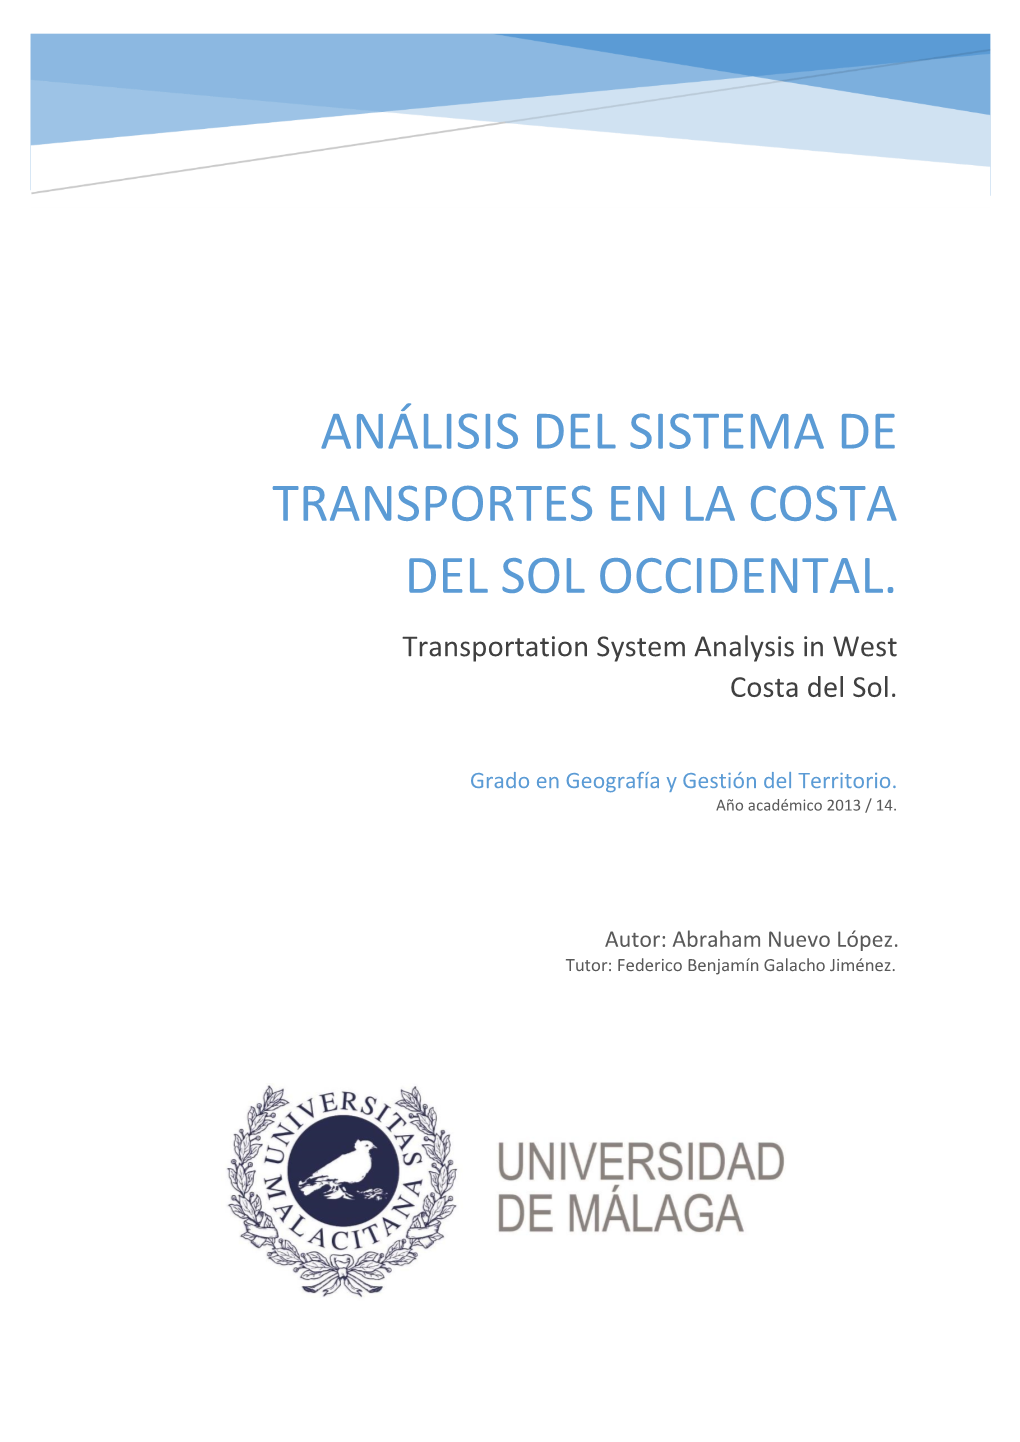 ANÁLISIS DEL SISTEMA DE TRANSPORTES EN LA COSTA DEL SOL OCCIDENTAL. Transportation System Analysis in West Costa Del Sol